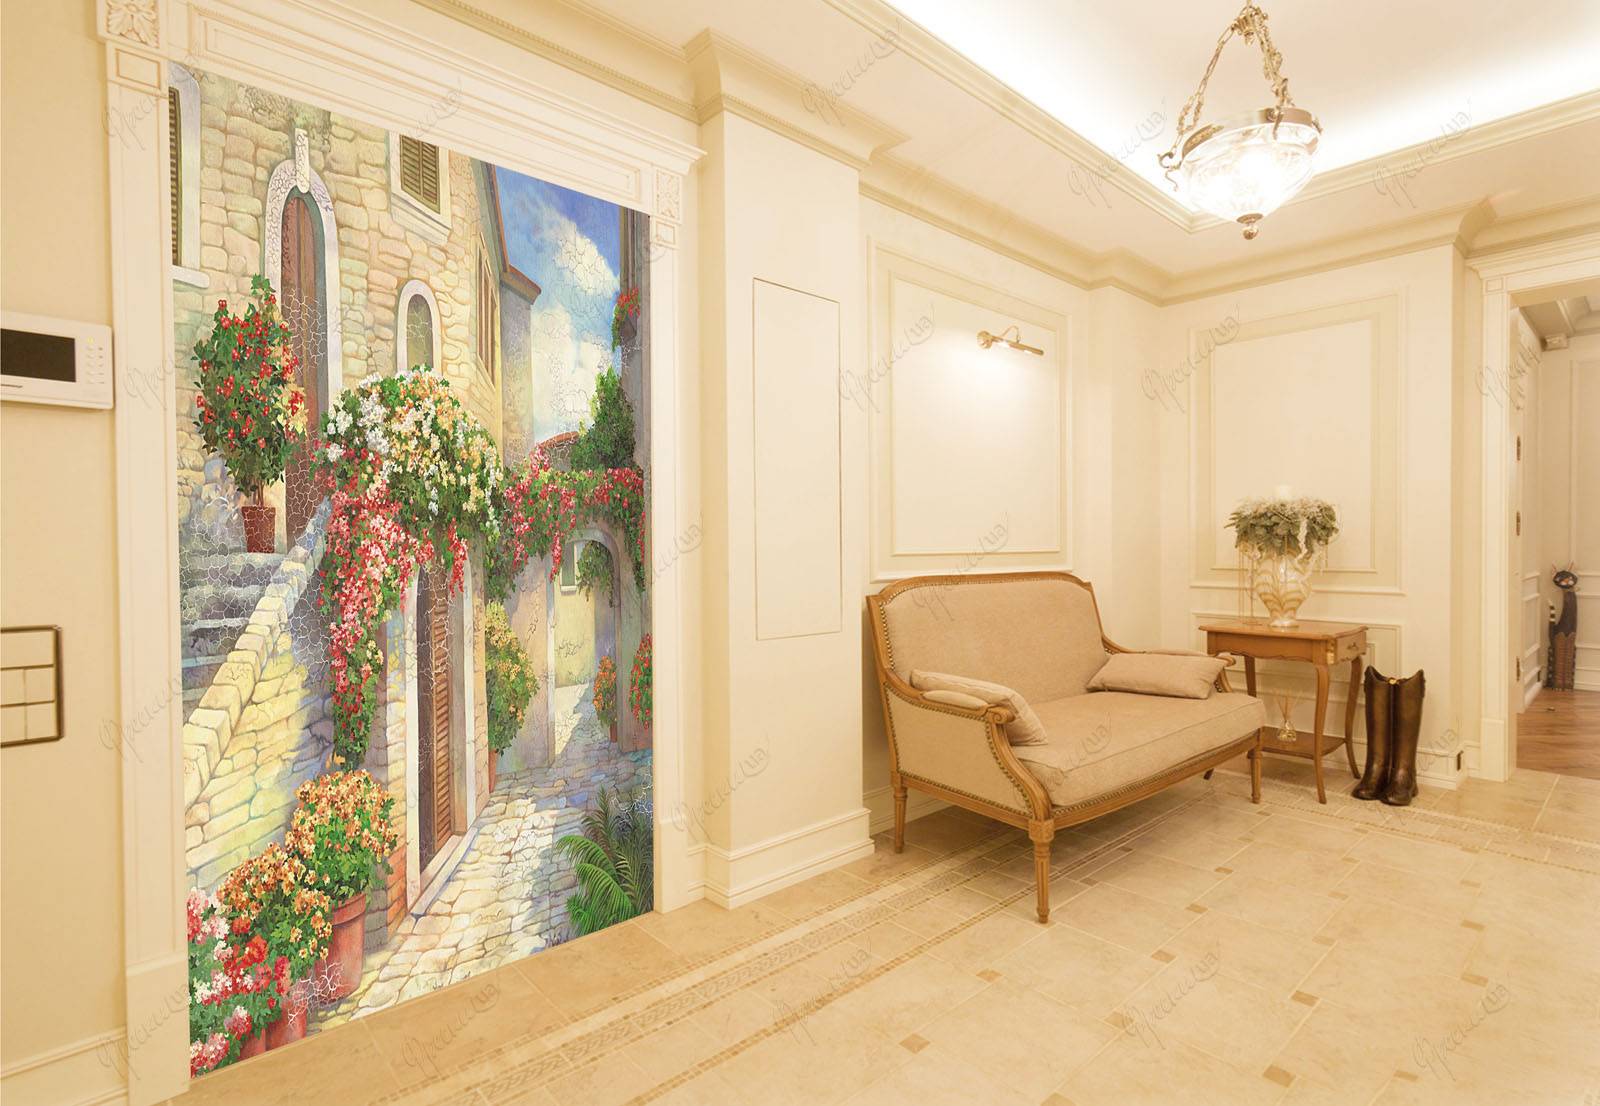 Фреска в интерьере – как она выглядит в прихожей, гостиной, кухни и спальни? 150+ фото вариантов оригинальных идей